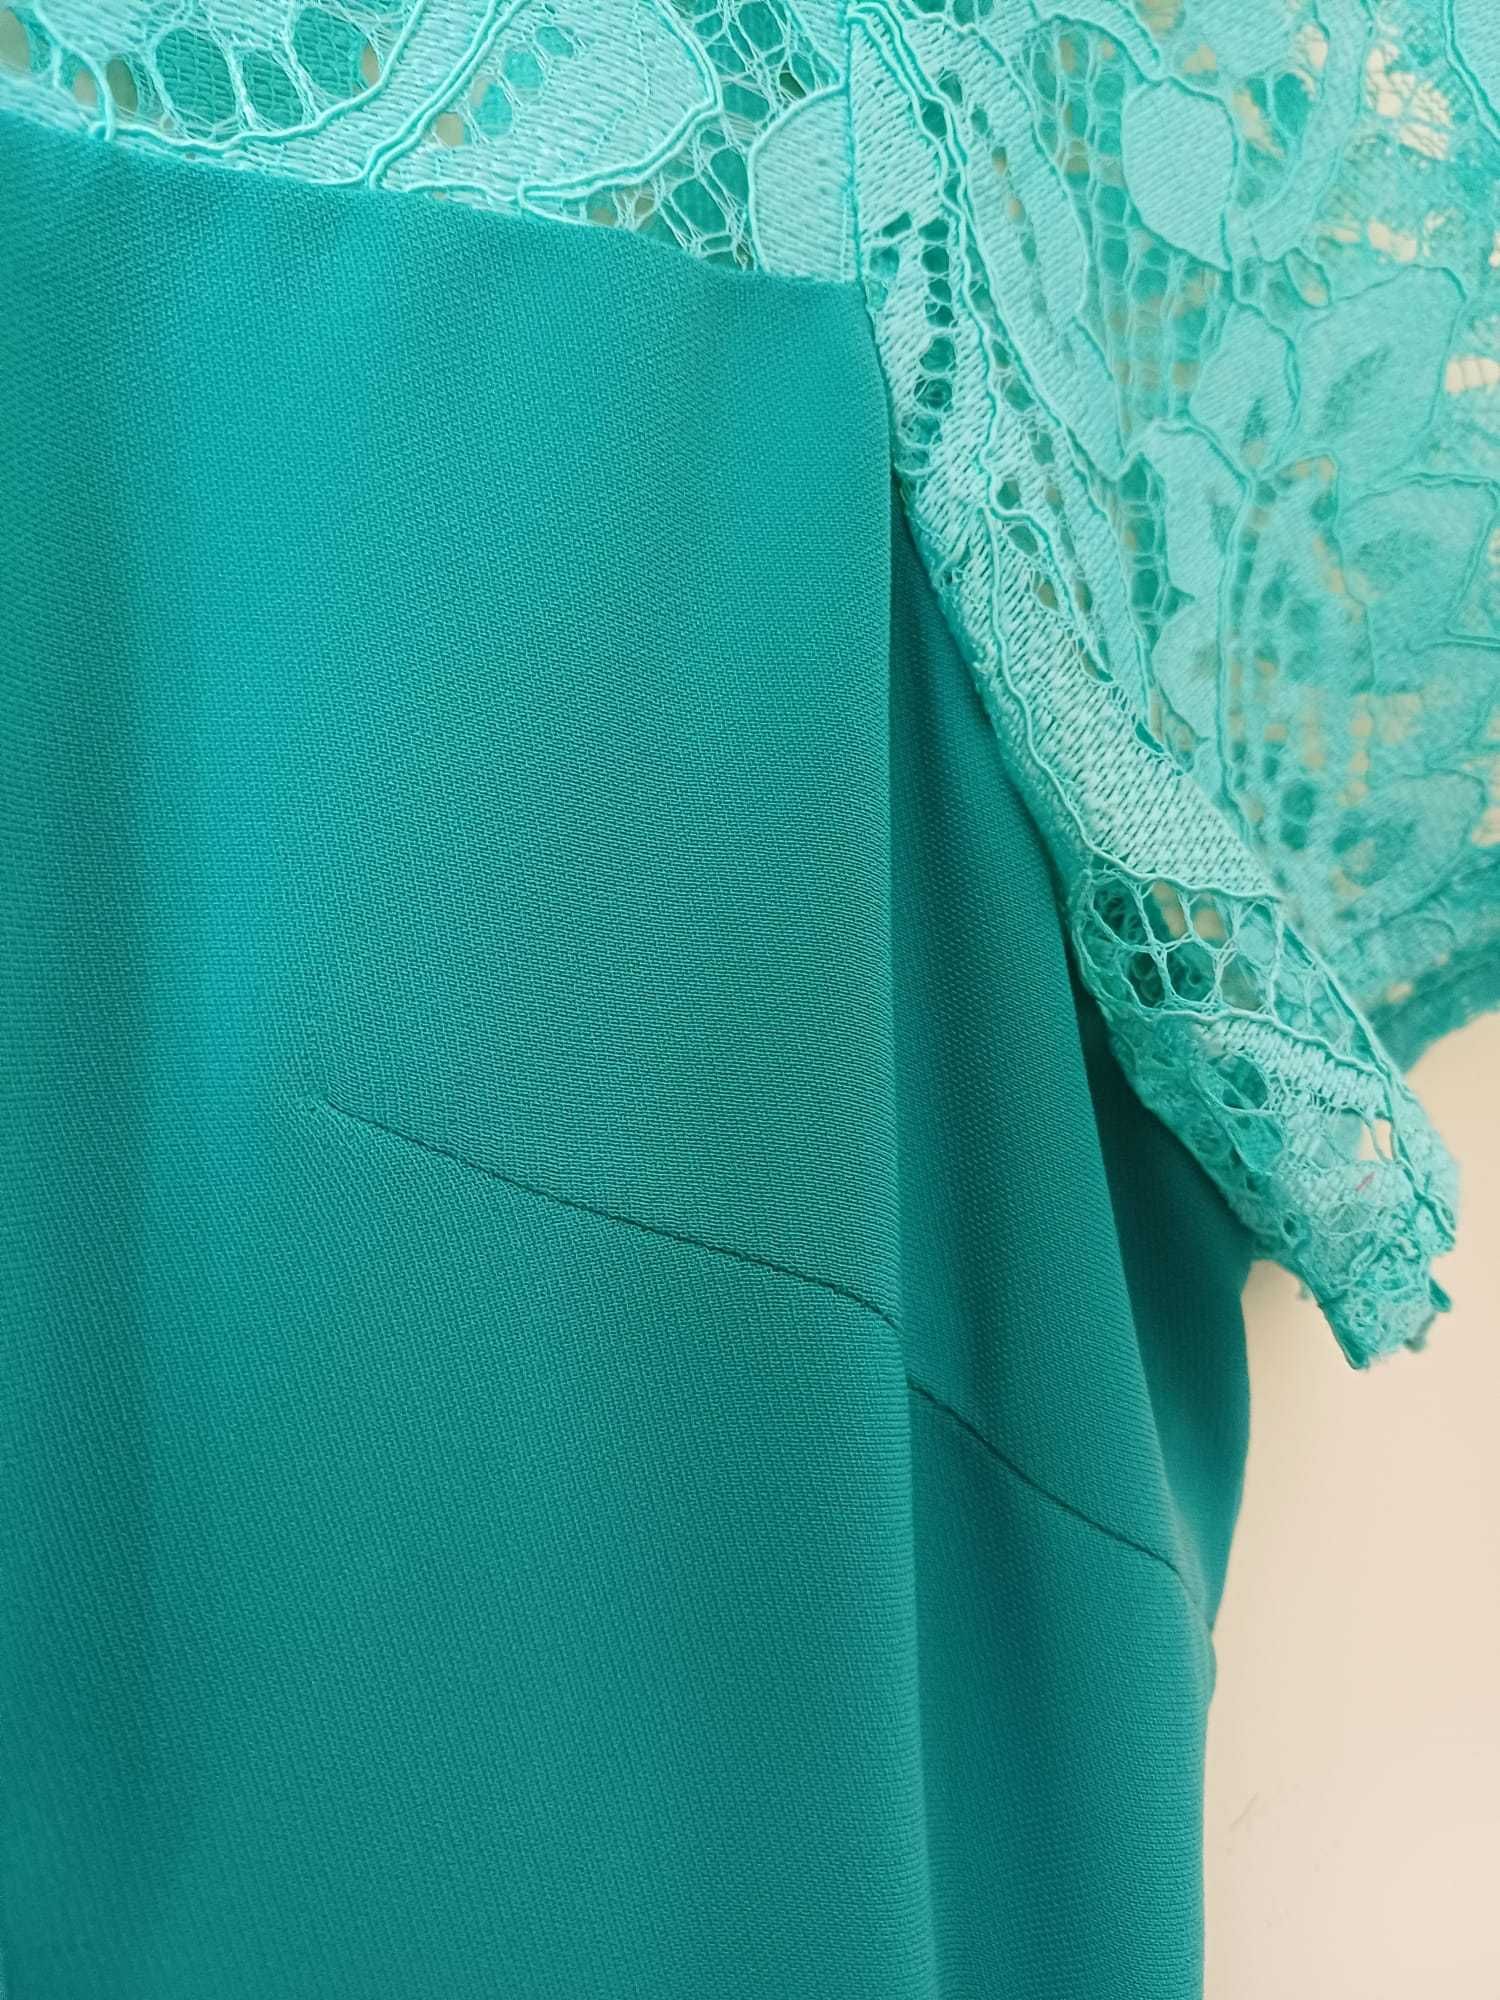 Vestido verde-água formal novo com etiqueta - Novas Tendências